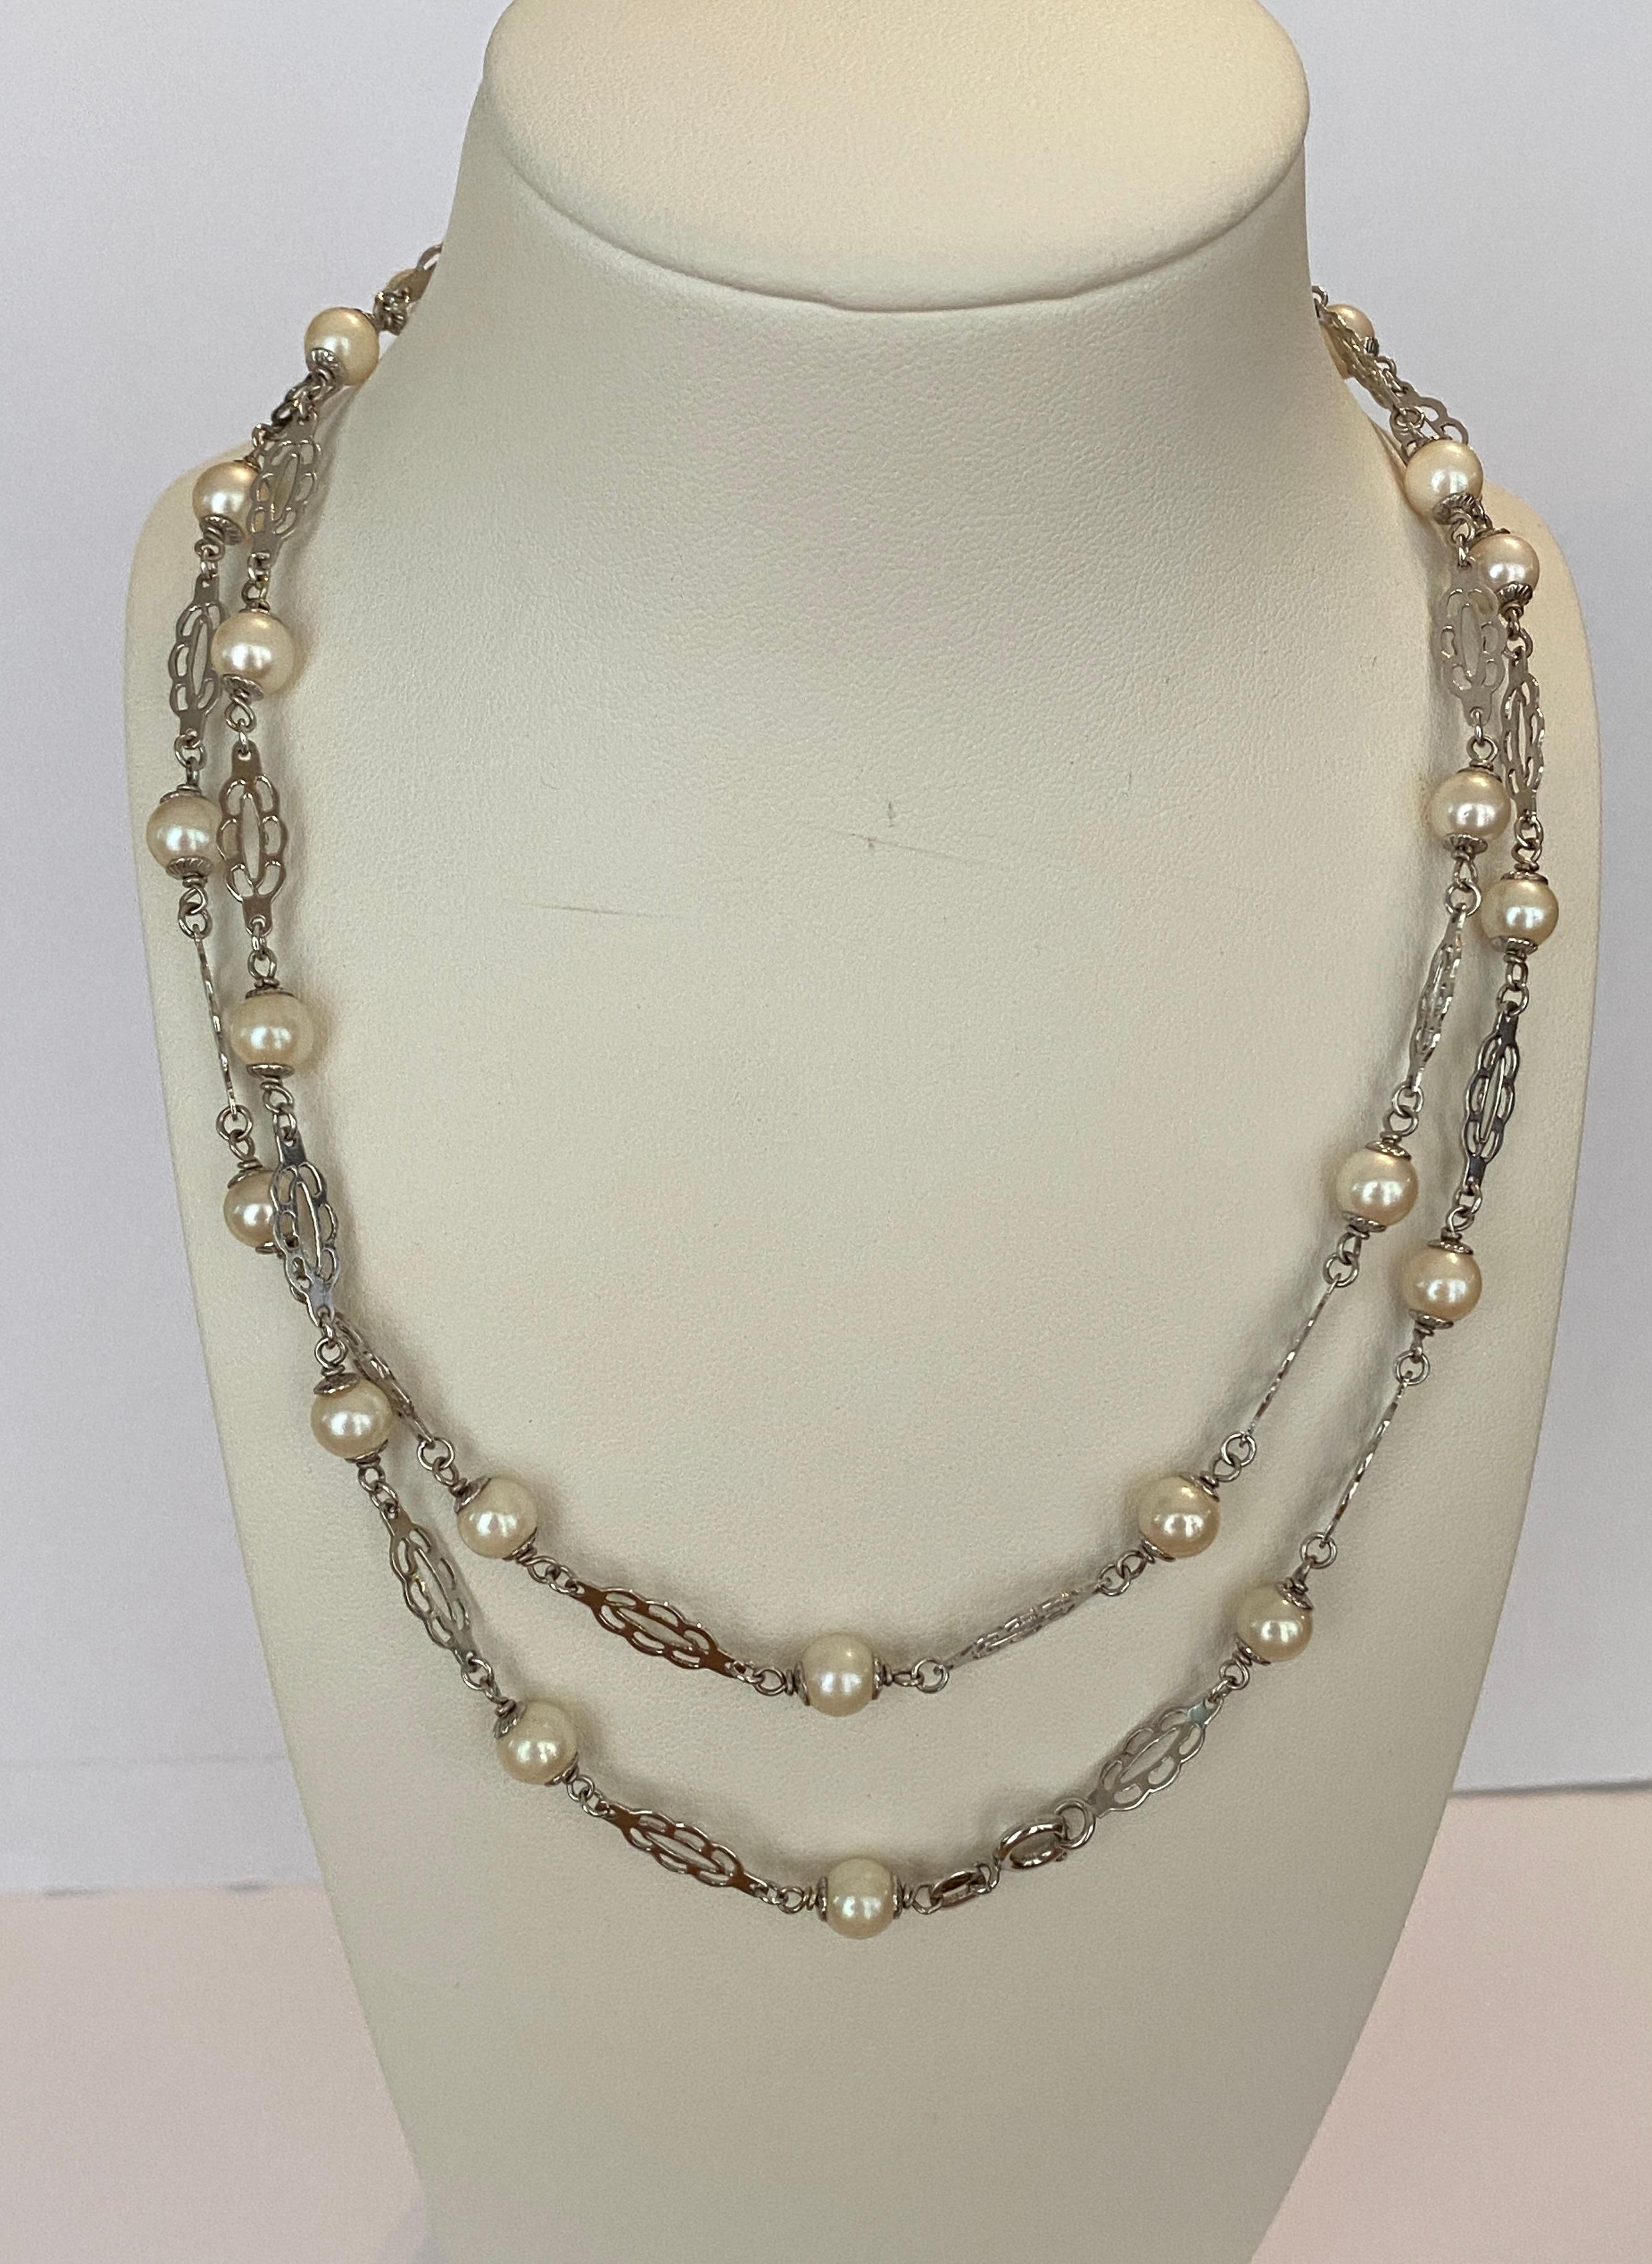 Angeboten wird eine schöne Vintage 14 KT Weißgold sautoir mit Perlen. Die Halskette ist verziert mit 52  natürliche Süßwasser-Zuchtperlen. Perlen von großer Regelmäßigkeit und sehr feinem Lüster. 
Die Größe der Perlen: von 6,25 mm bis 6,40 mm.